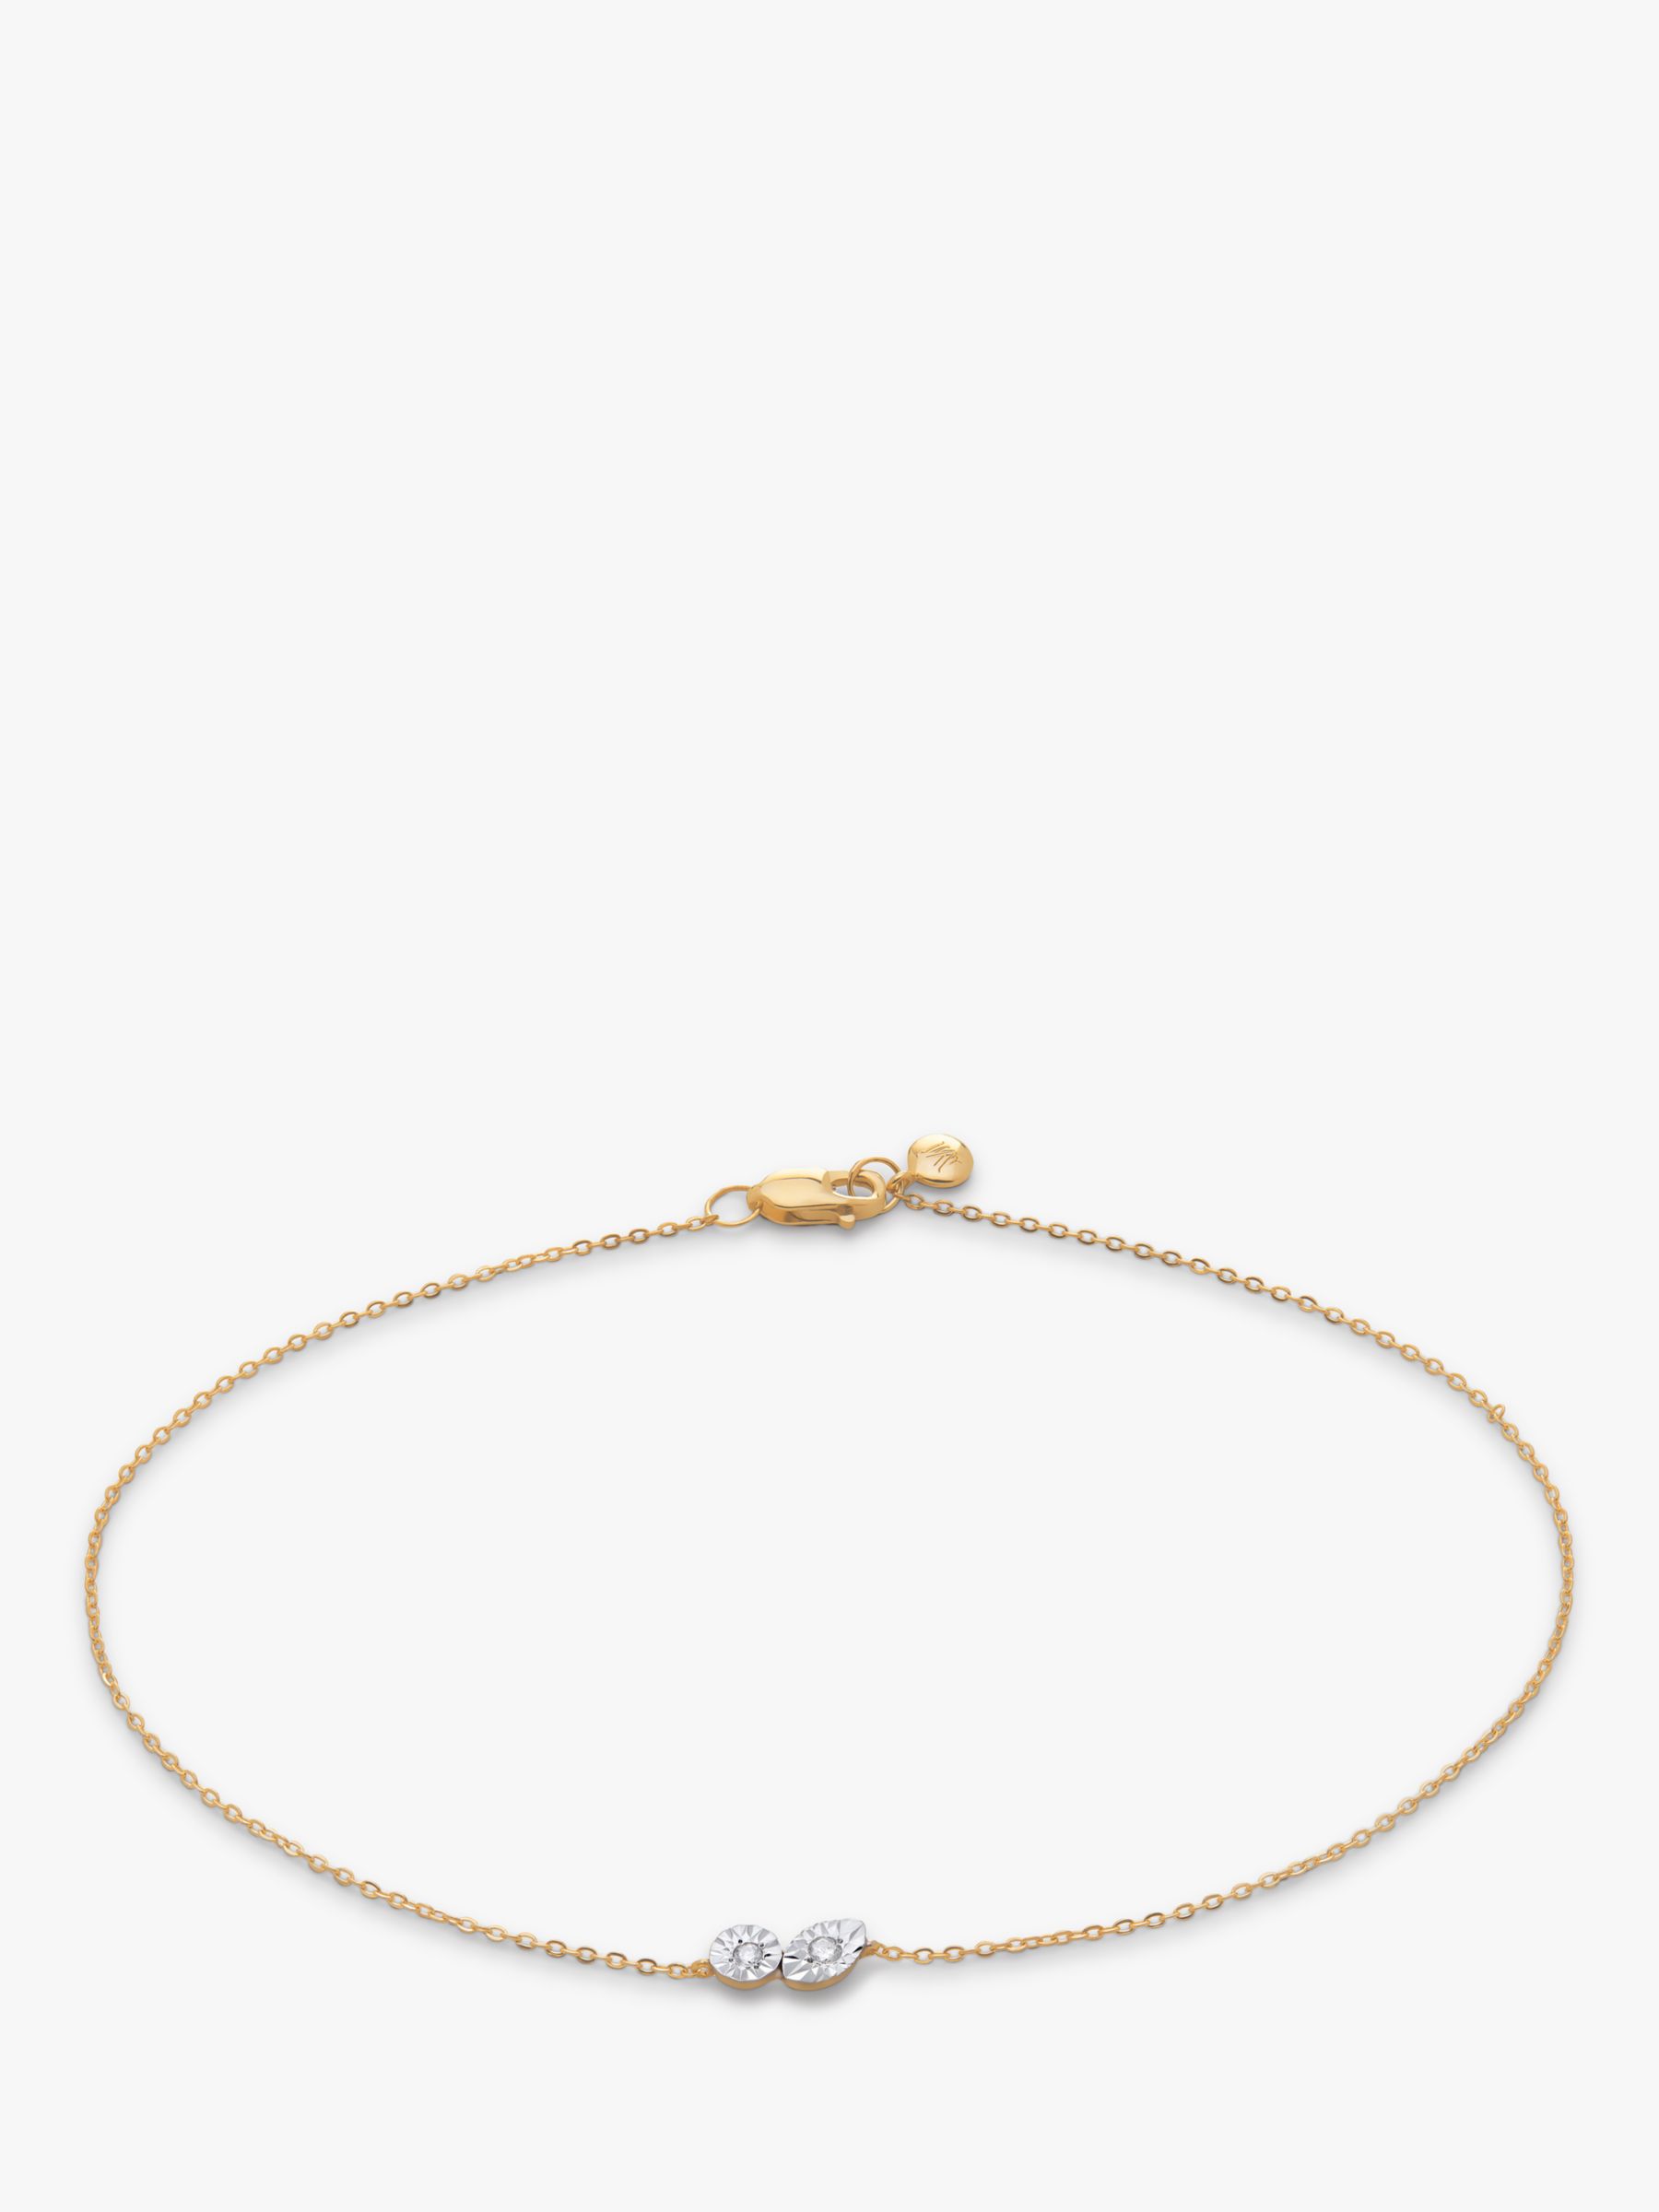 Monica Vinader Diamond Chain Bracelet, Gold, M